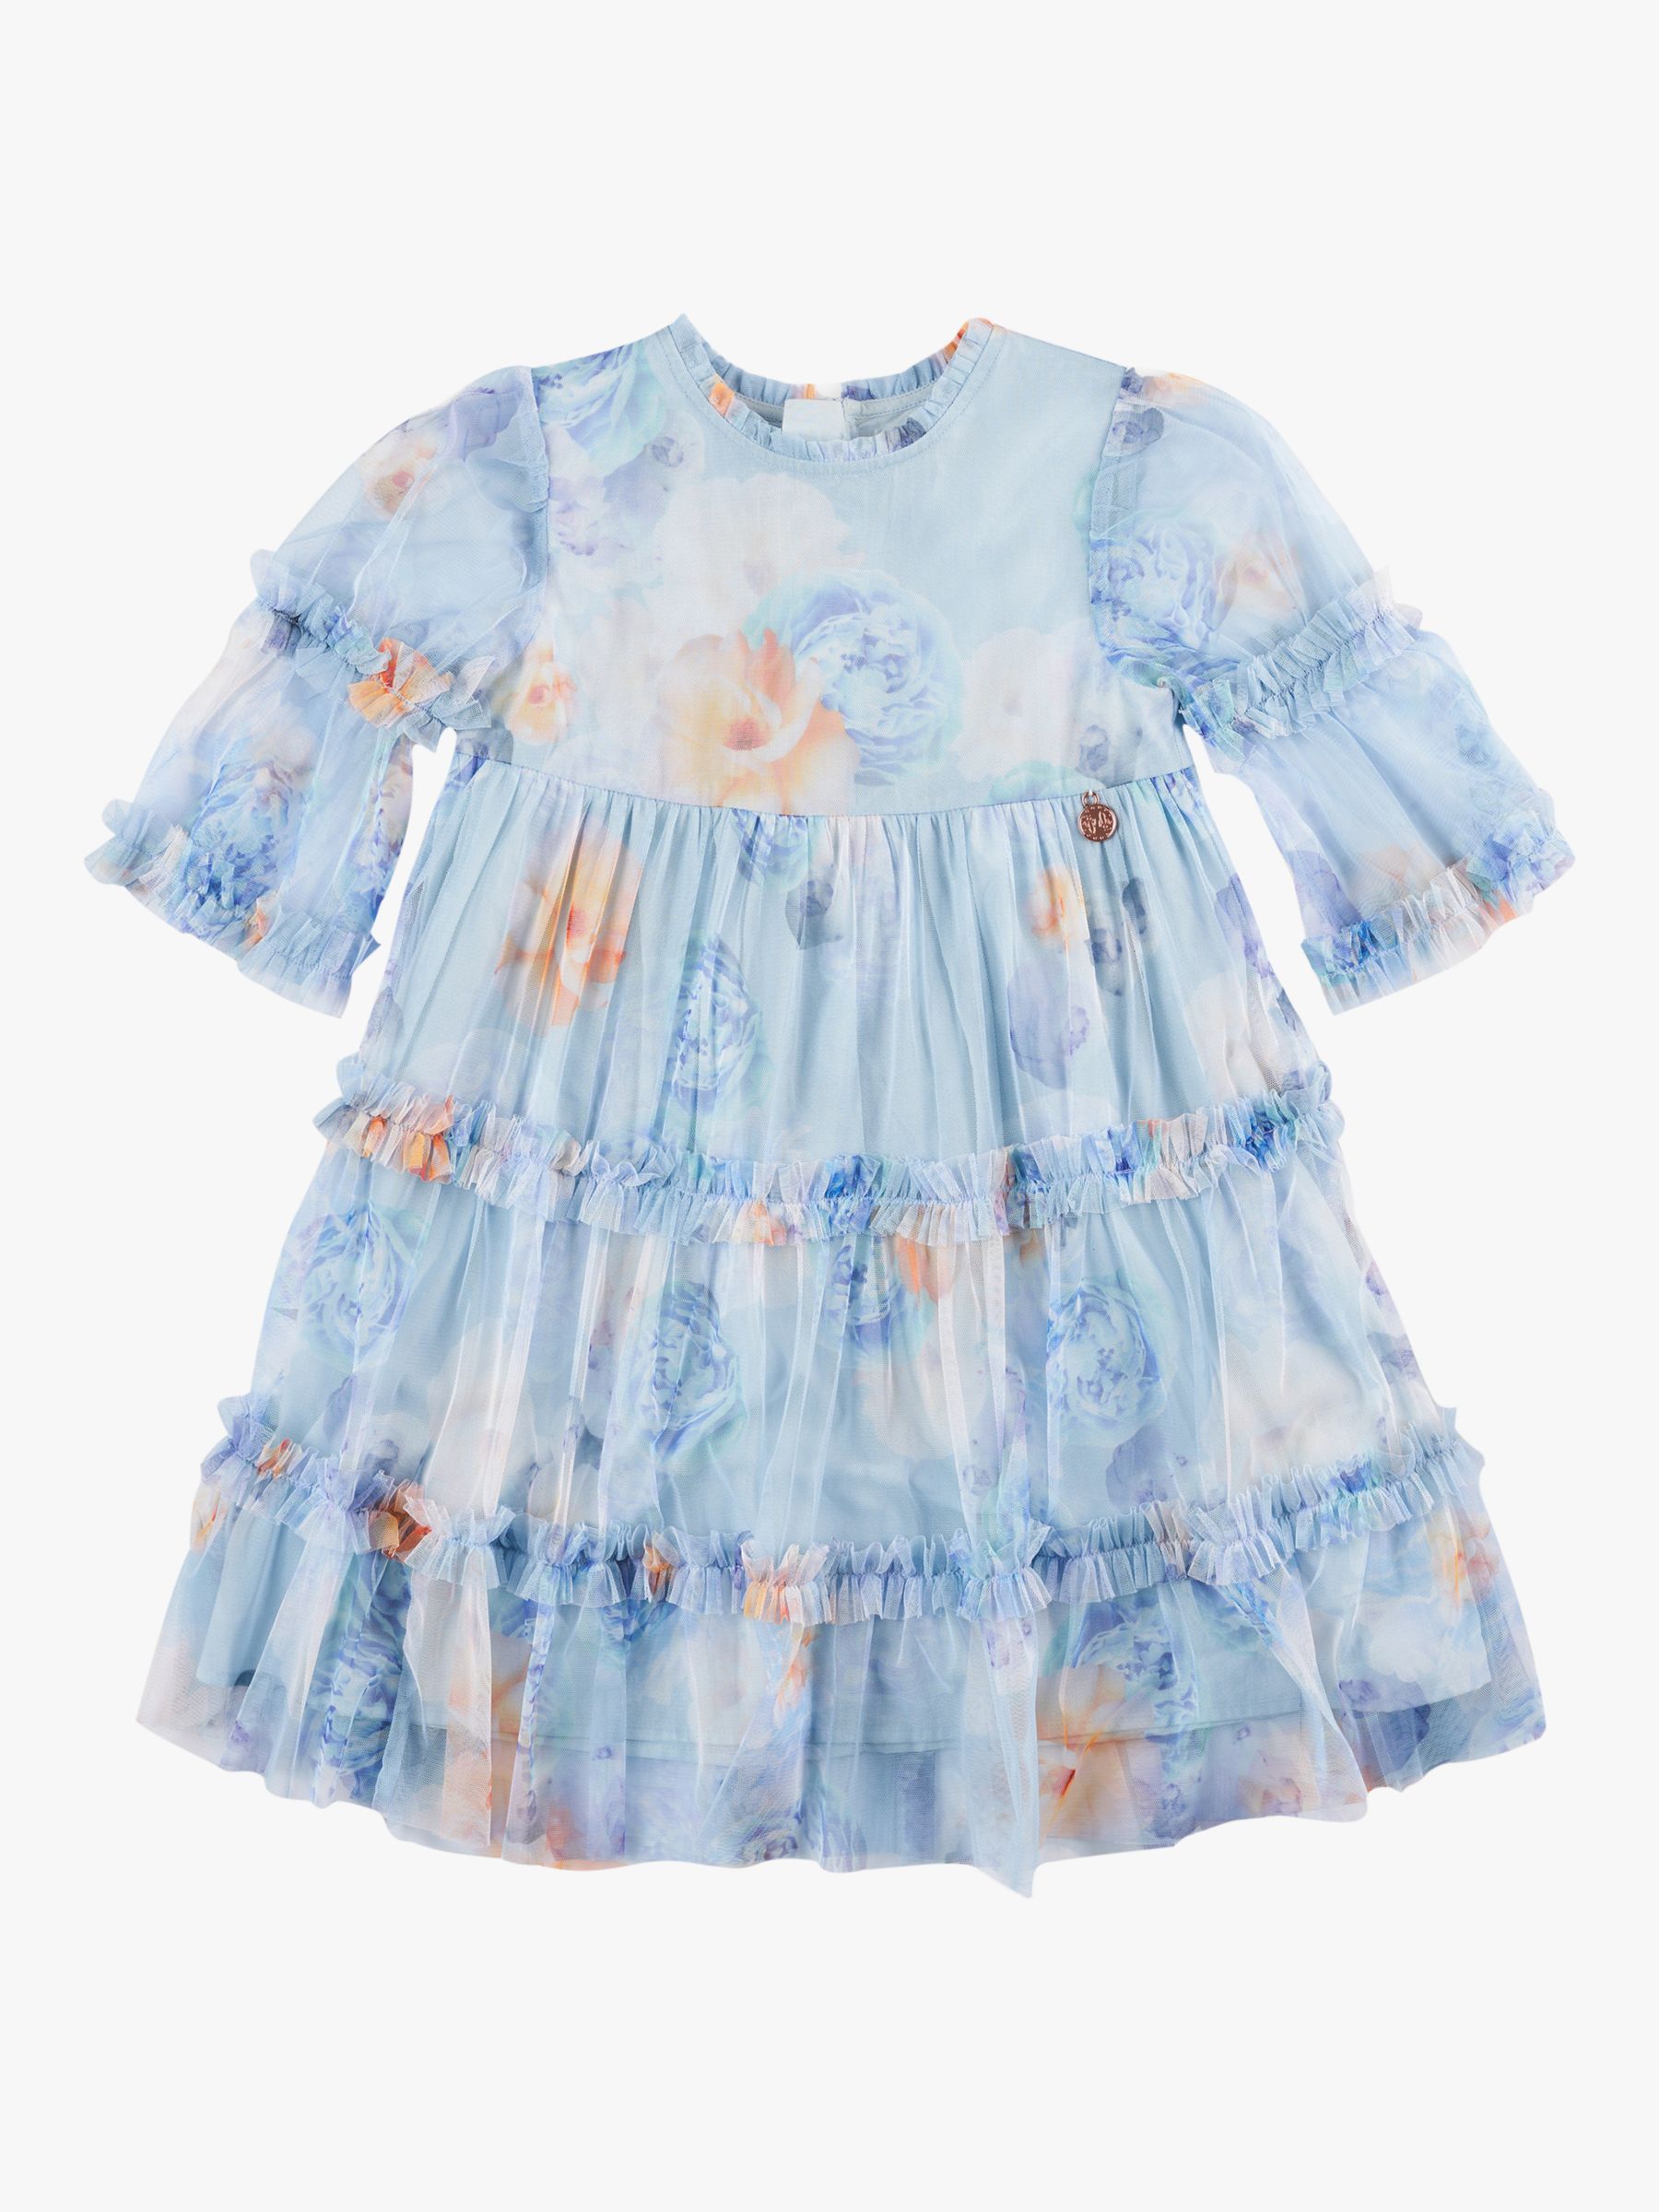 Angel & Rocket Kids' Eleanor Mesh Ruffle Dress, Blue, 3 years